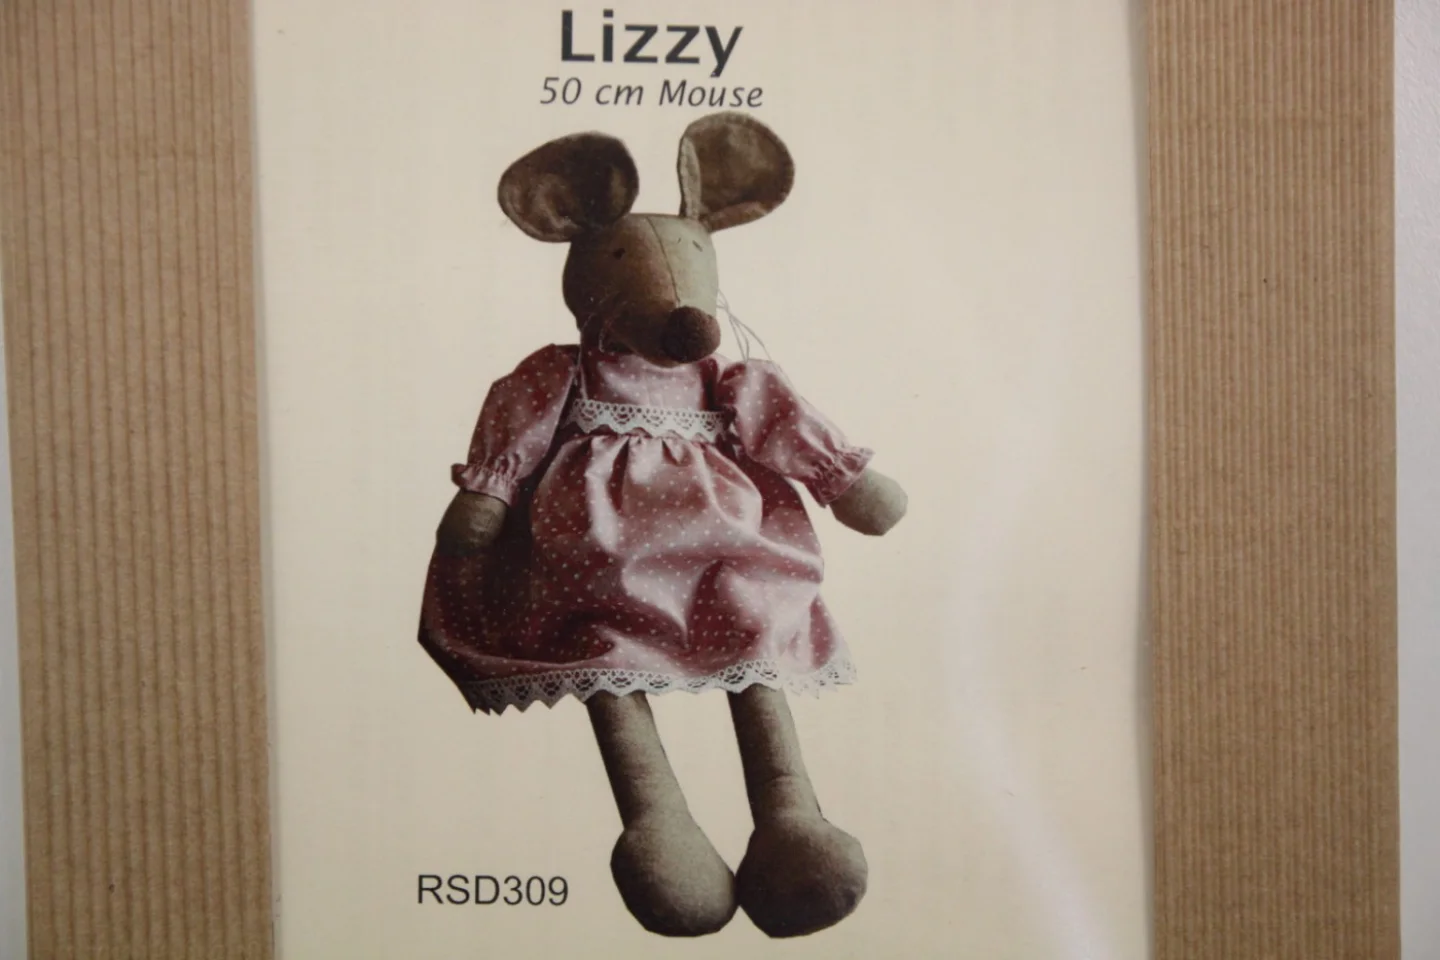 Pakketje-Lizzy-meisjesmuis Lizzy-50 cm g.